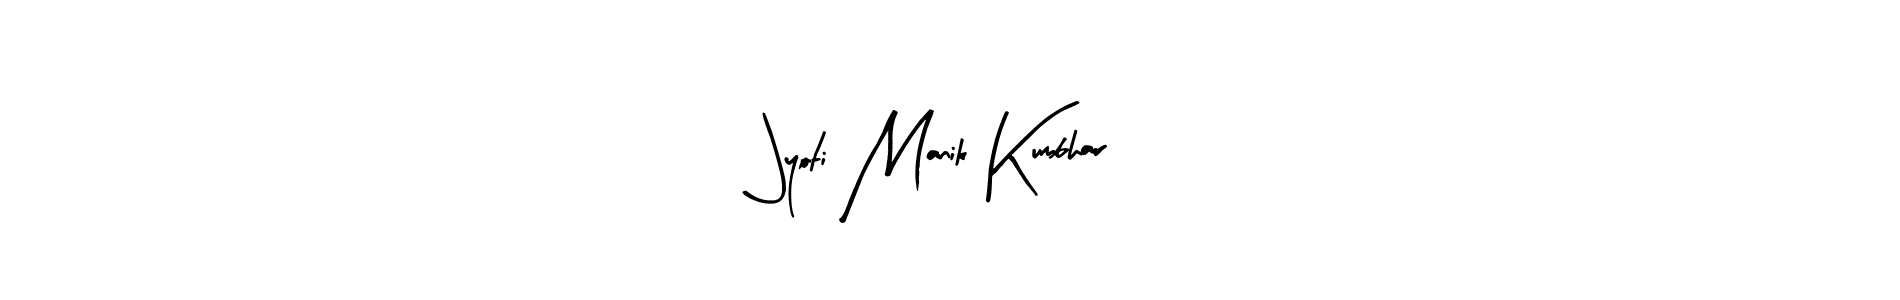 How to Draw Jyoti Manik Kumbhar signature style? Arty Signature is a latest design signature styles for name Jyoti Manik Kumbhar. Jyoti Manik Kumbhar signature style 8 images and pictures png